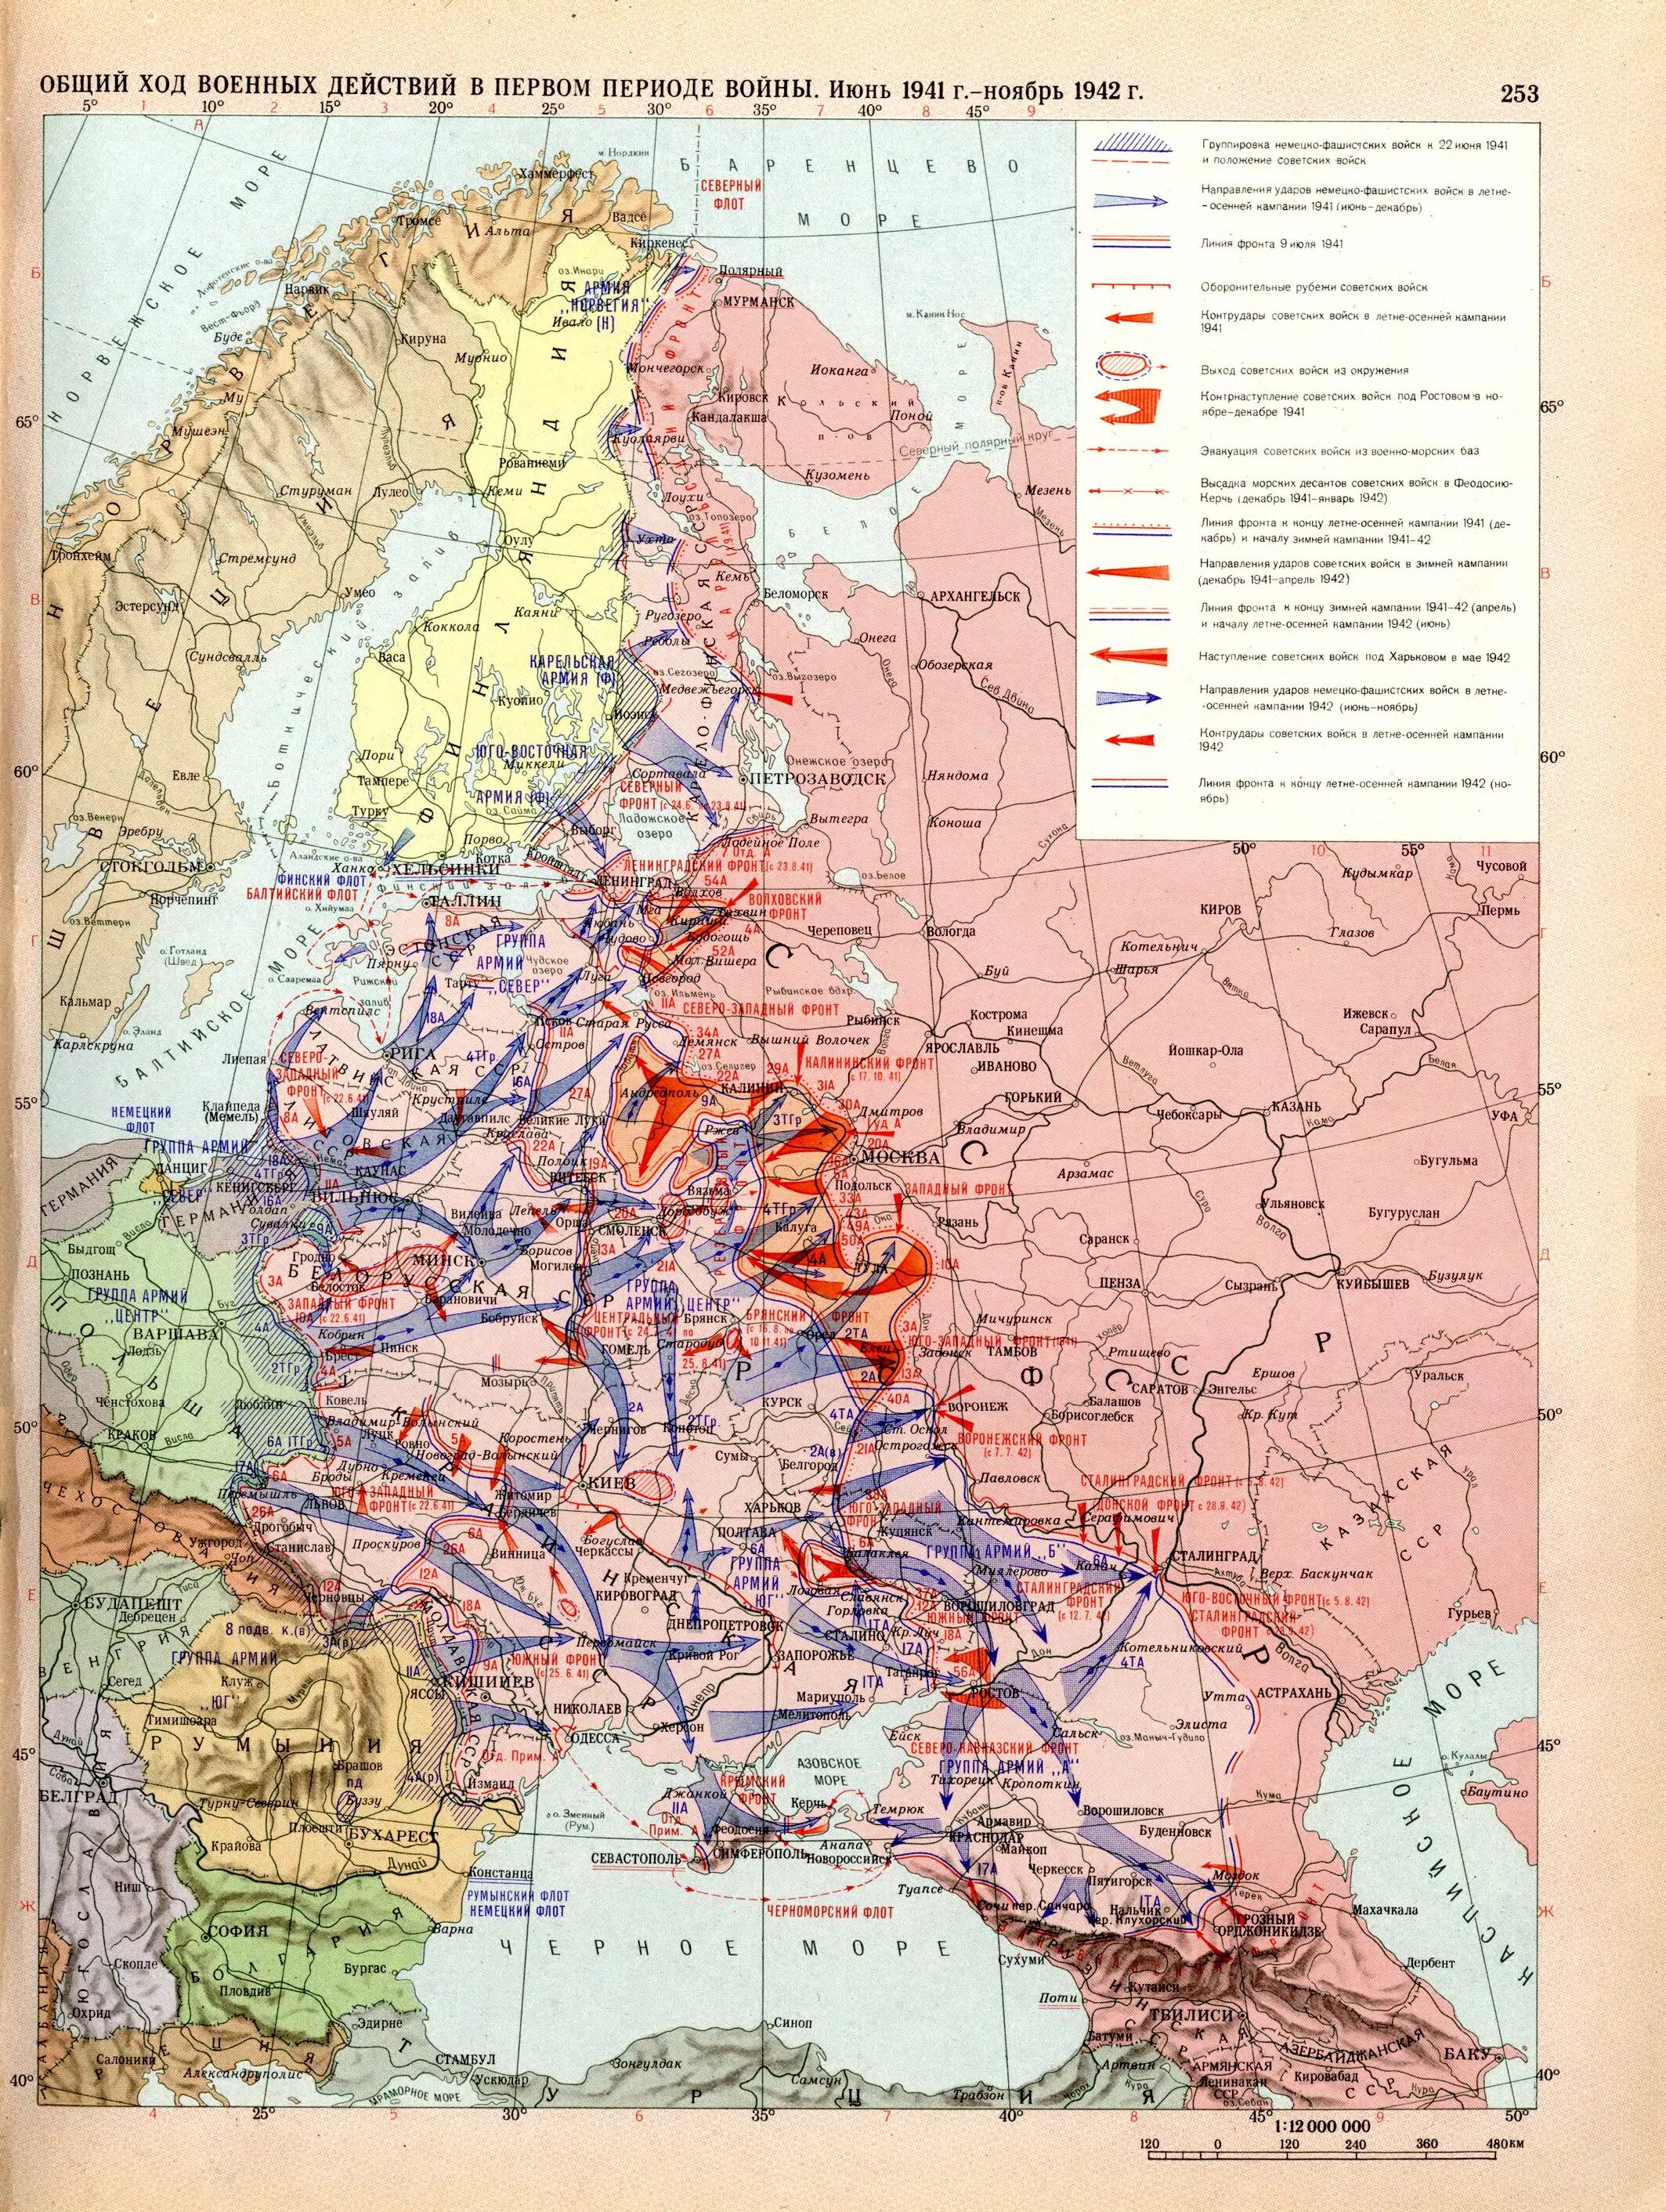 Первые боевые действия великой отечественной войны. Общий ход военных действий в 1941 1942 карта. Карта восточного фронта второй мировой войны 1941.